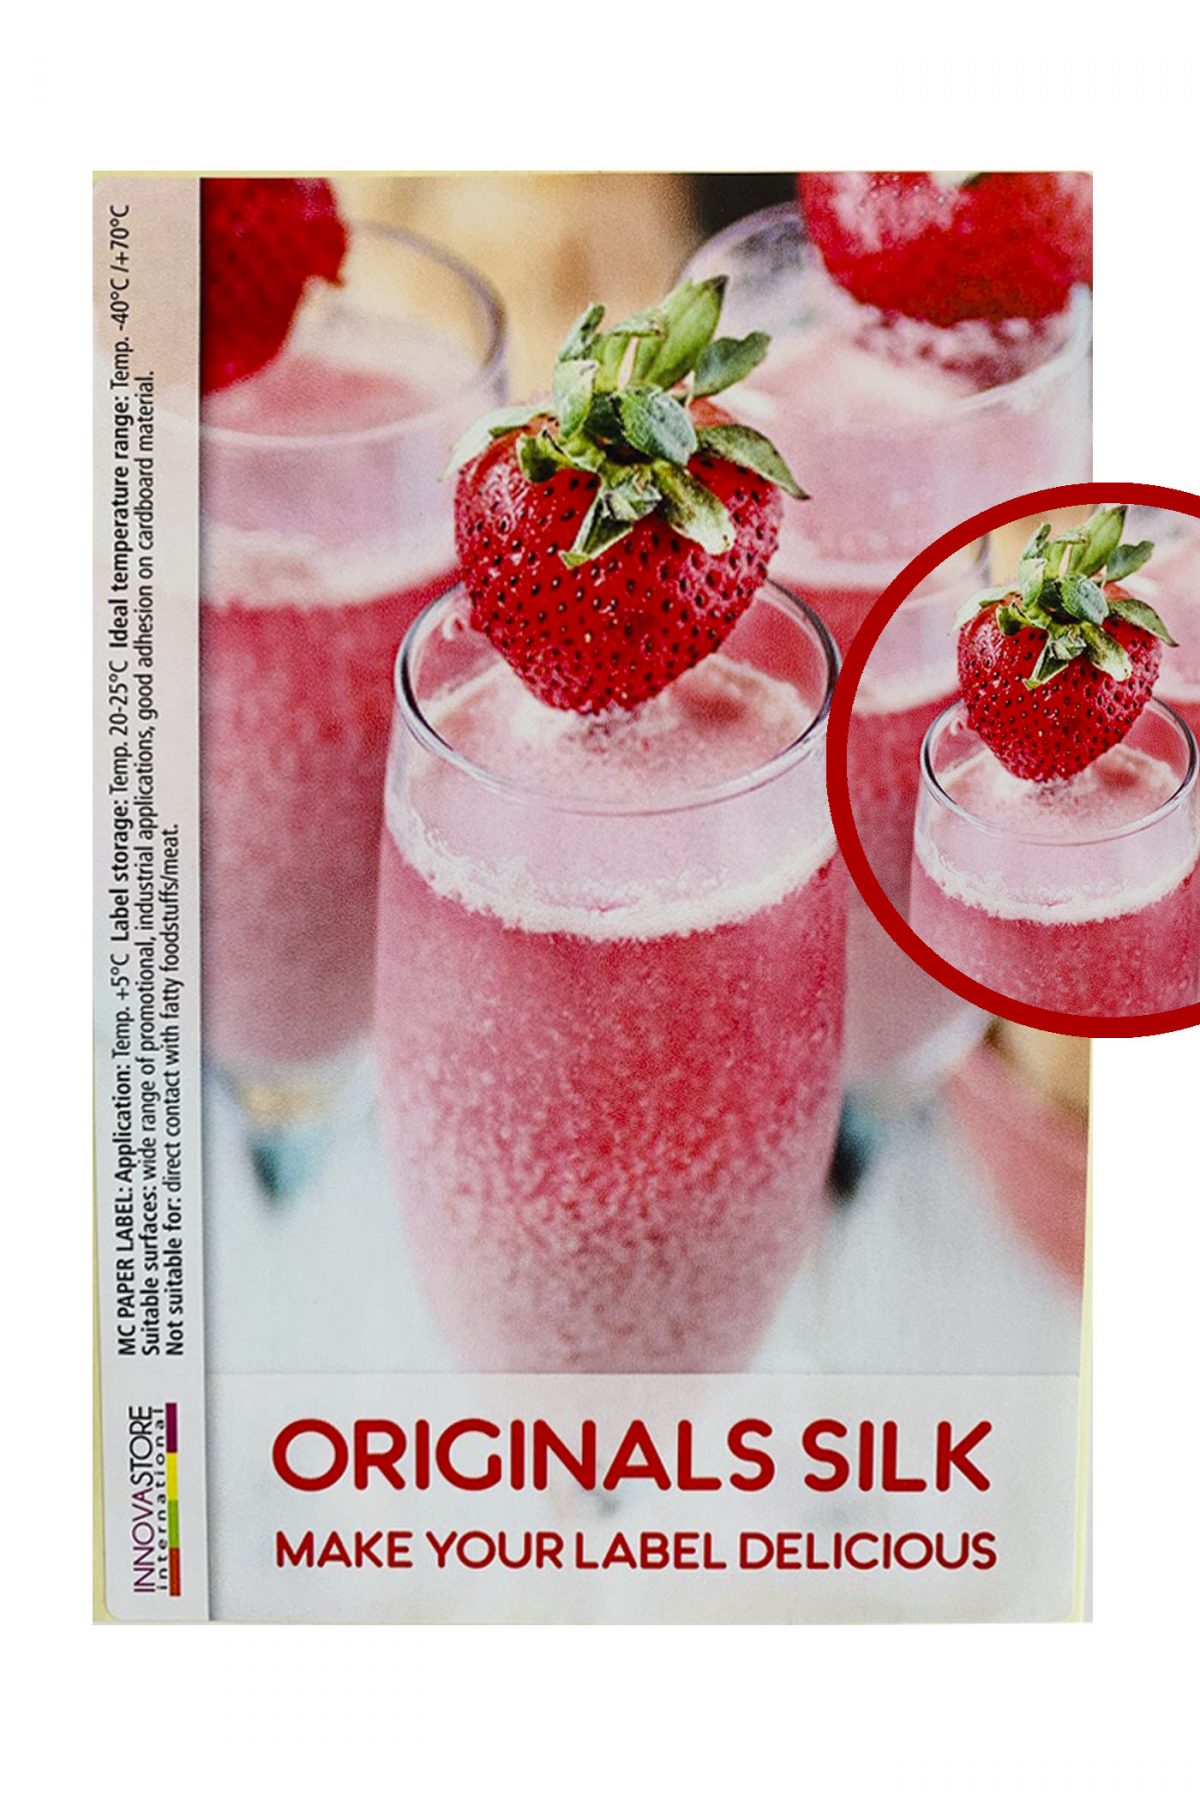 Label originals silk